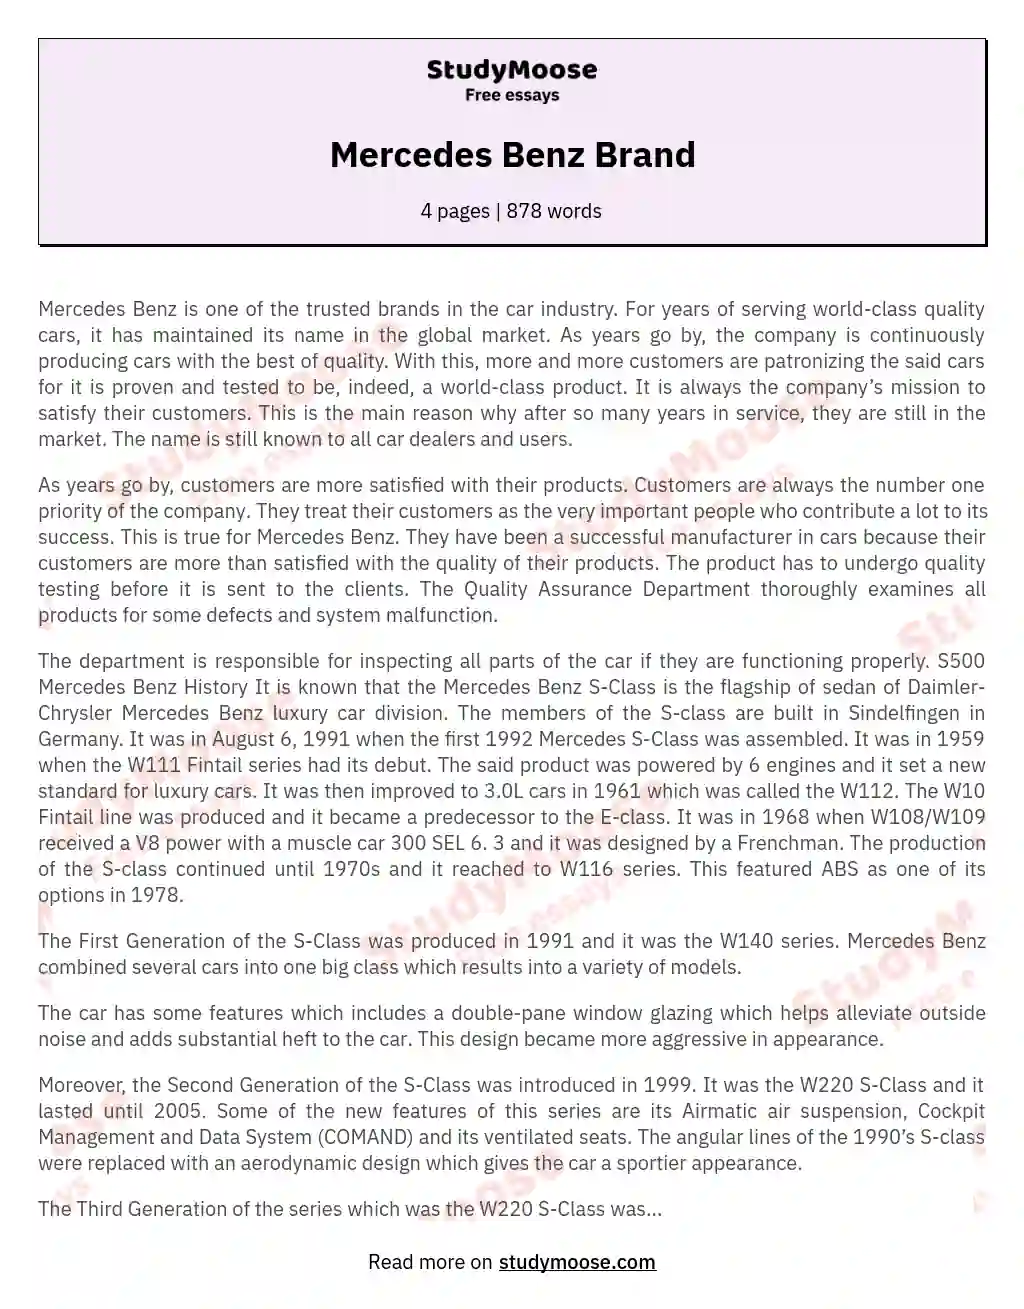 Mercedes Benz Brand essay